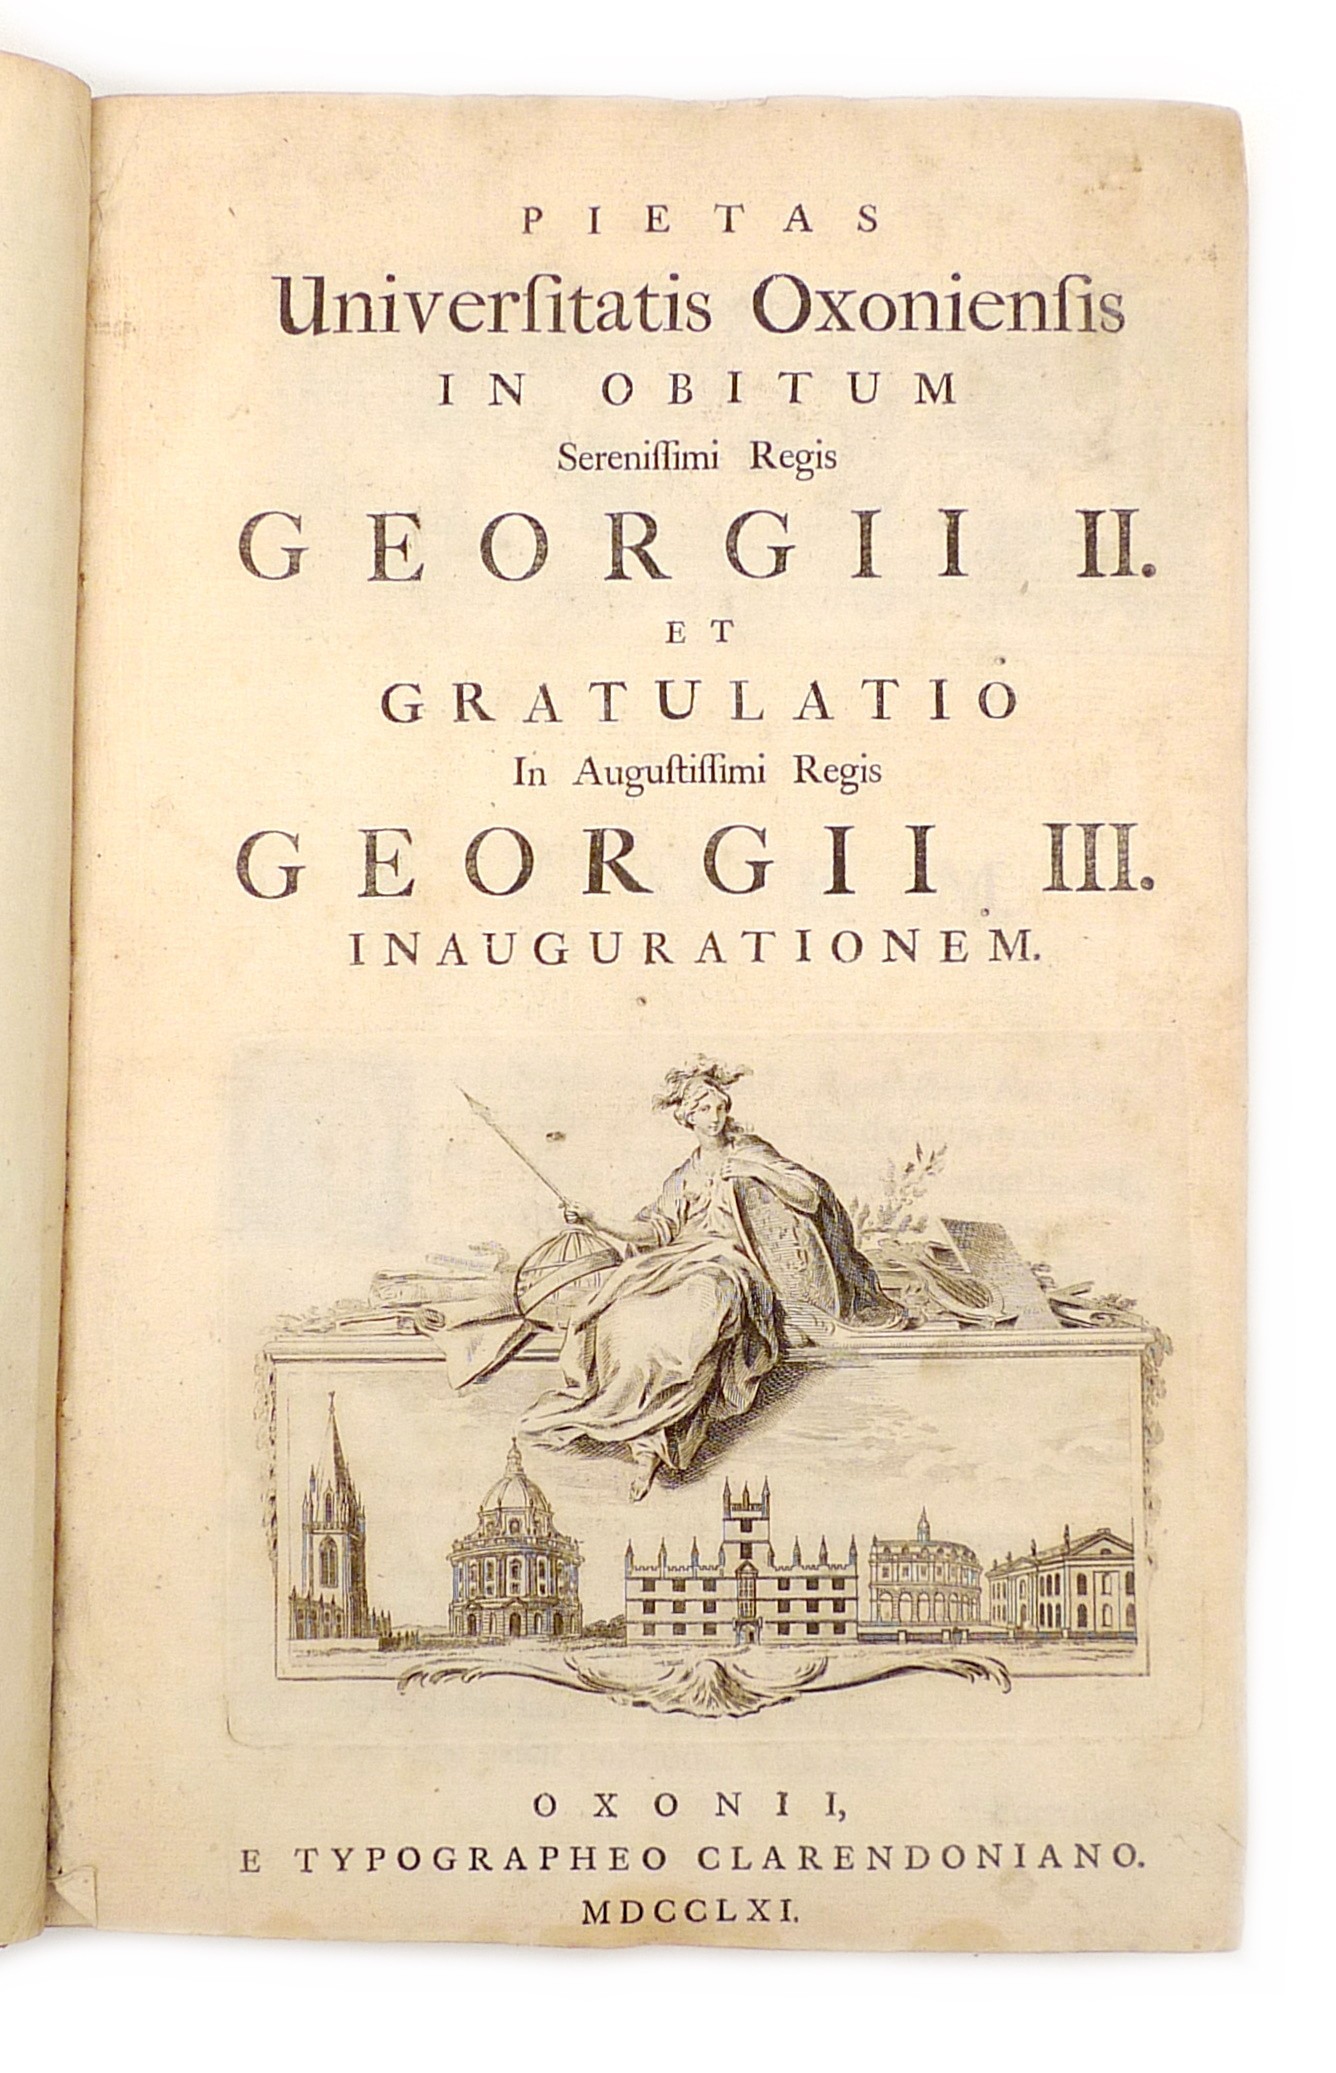 A rare 1761 edition of 'Pietas Universitatis Oxoniensis in Obitum Serenissimi Regis Georgii II. et - Image 3 of 4